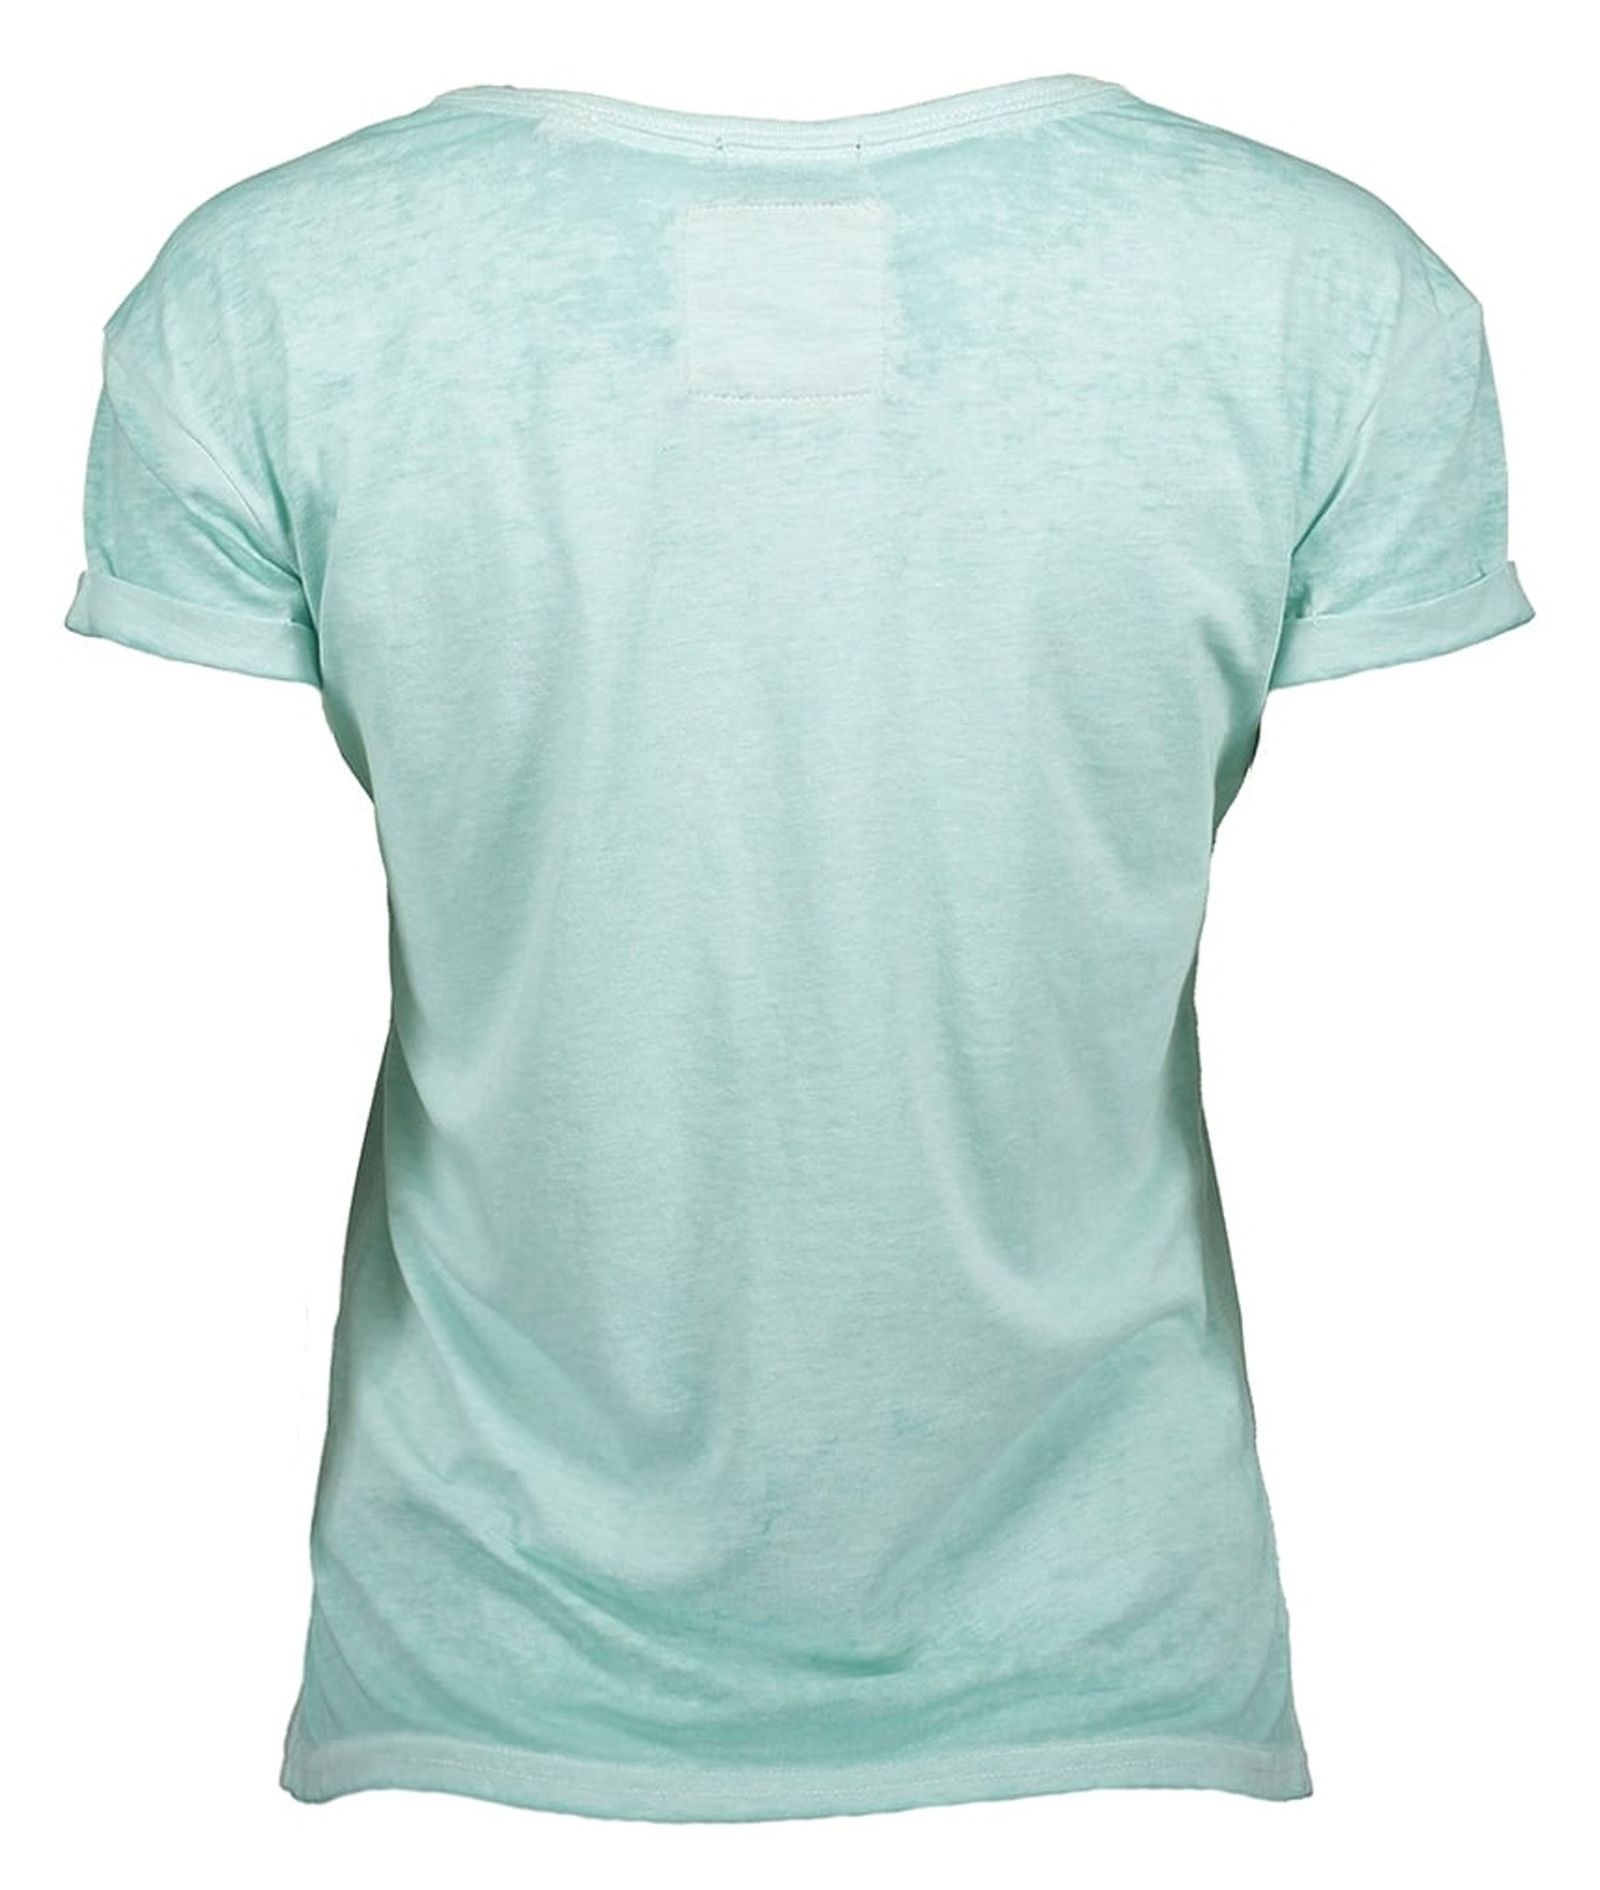 تی شرت یقه گرد زنانه - سوپردرای - سبز - 3